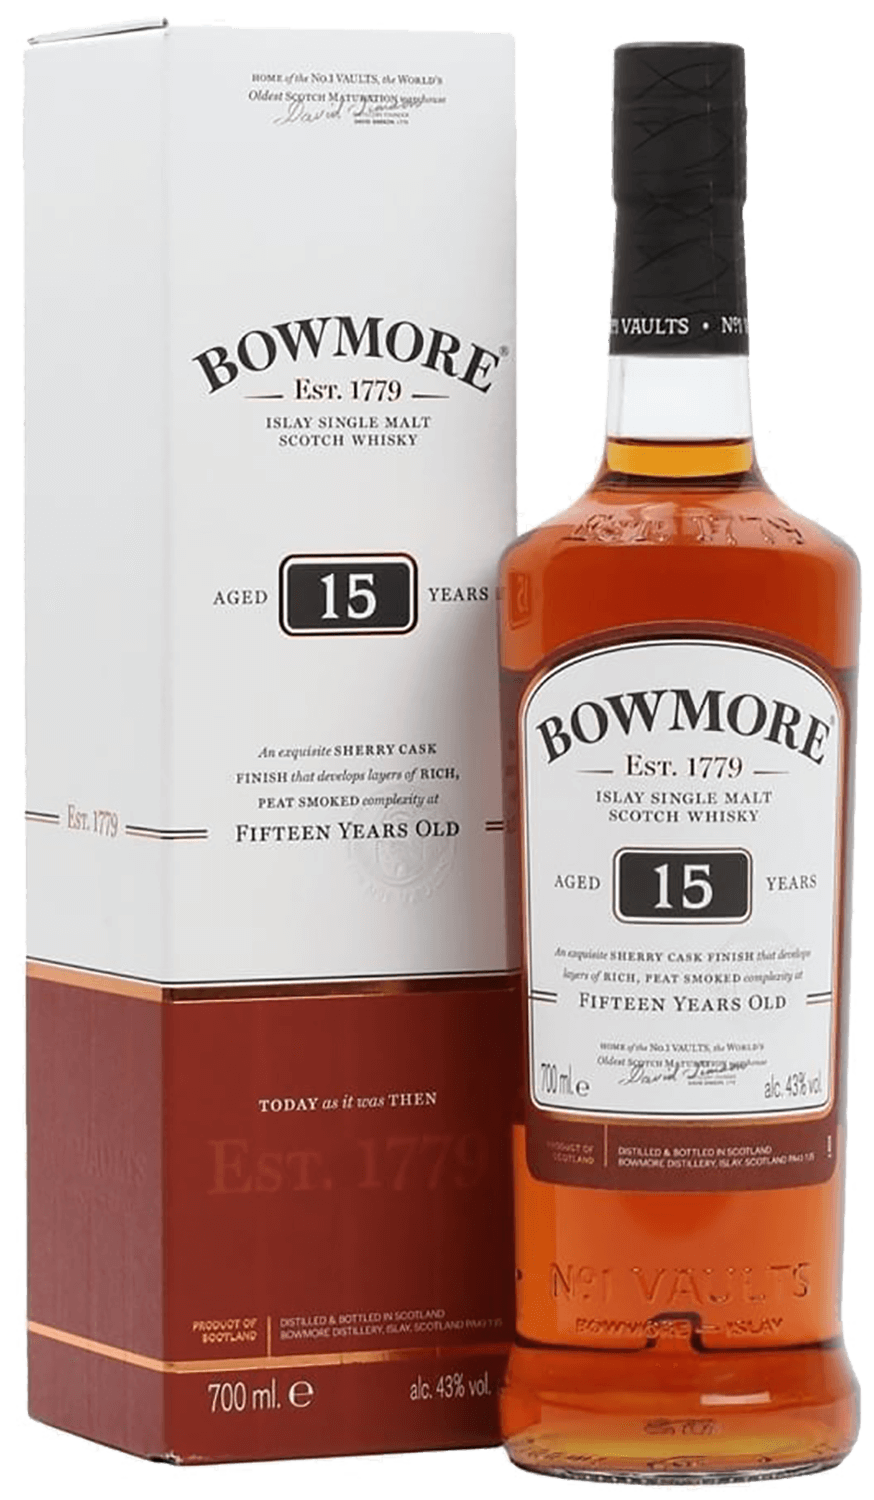 Bowmore 15 y.o. Islay single malt scotch whisky (gift box) bruichladdich organic islay single malt scotch whisky gift box